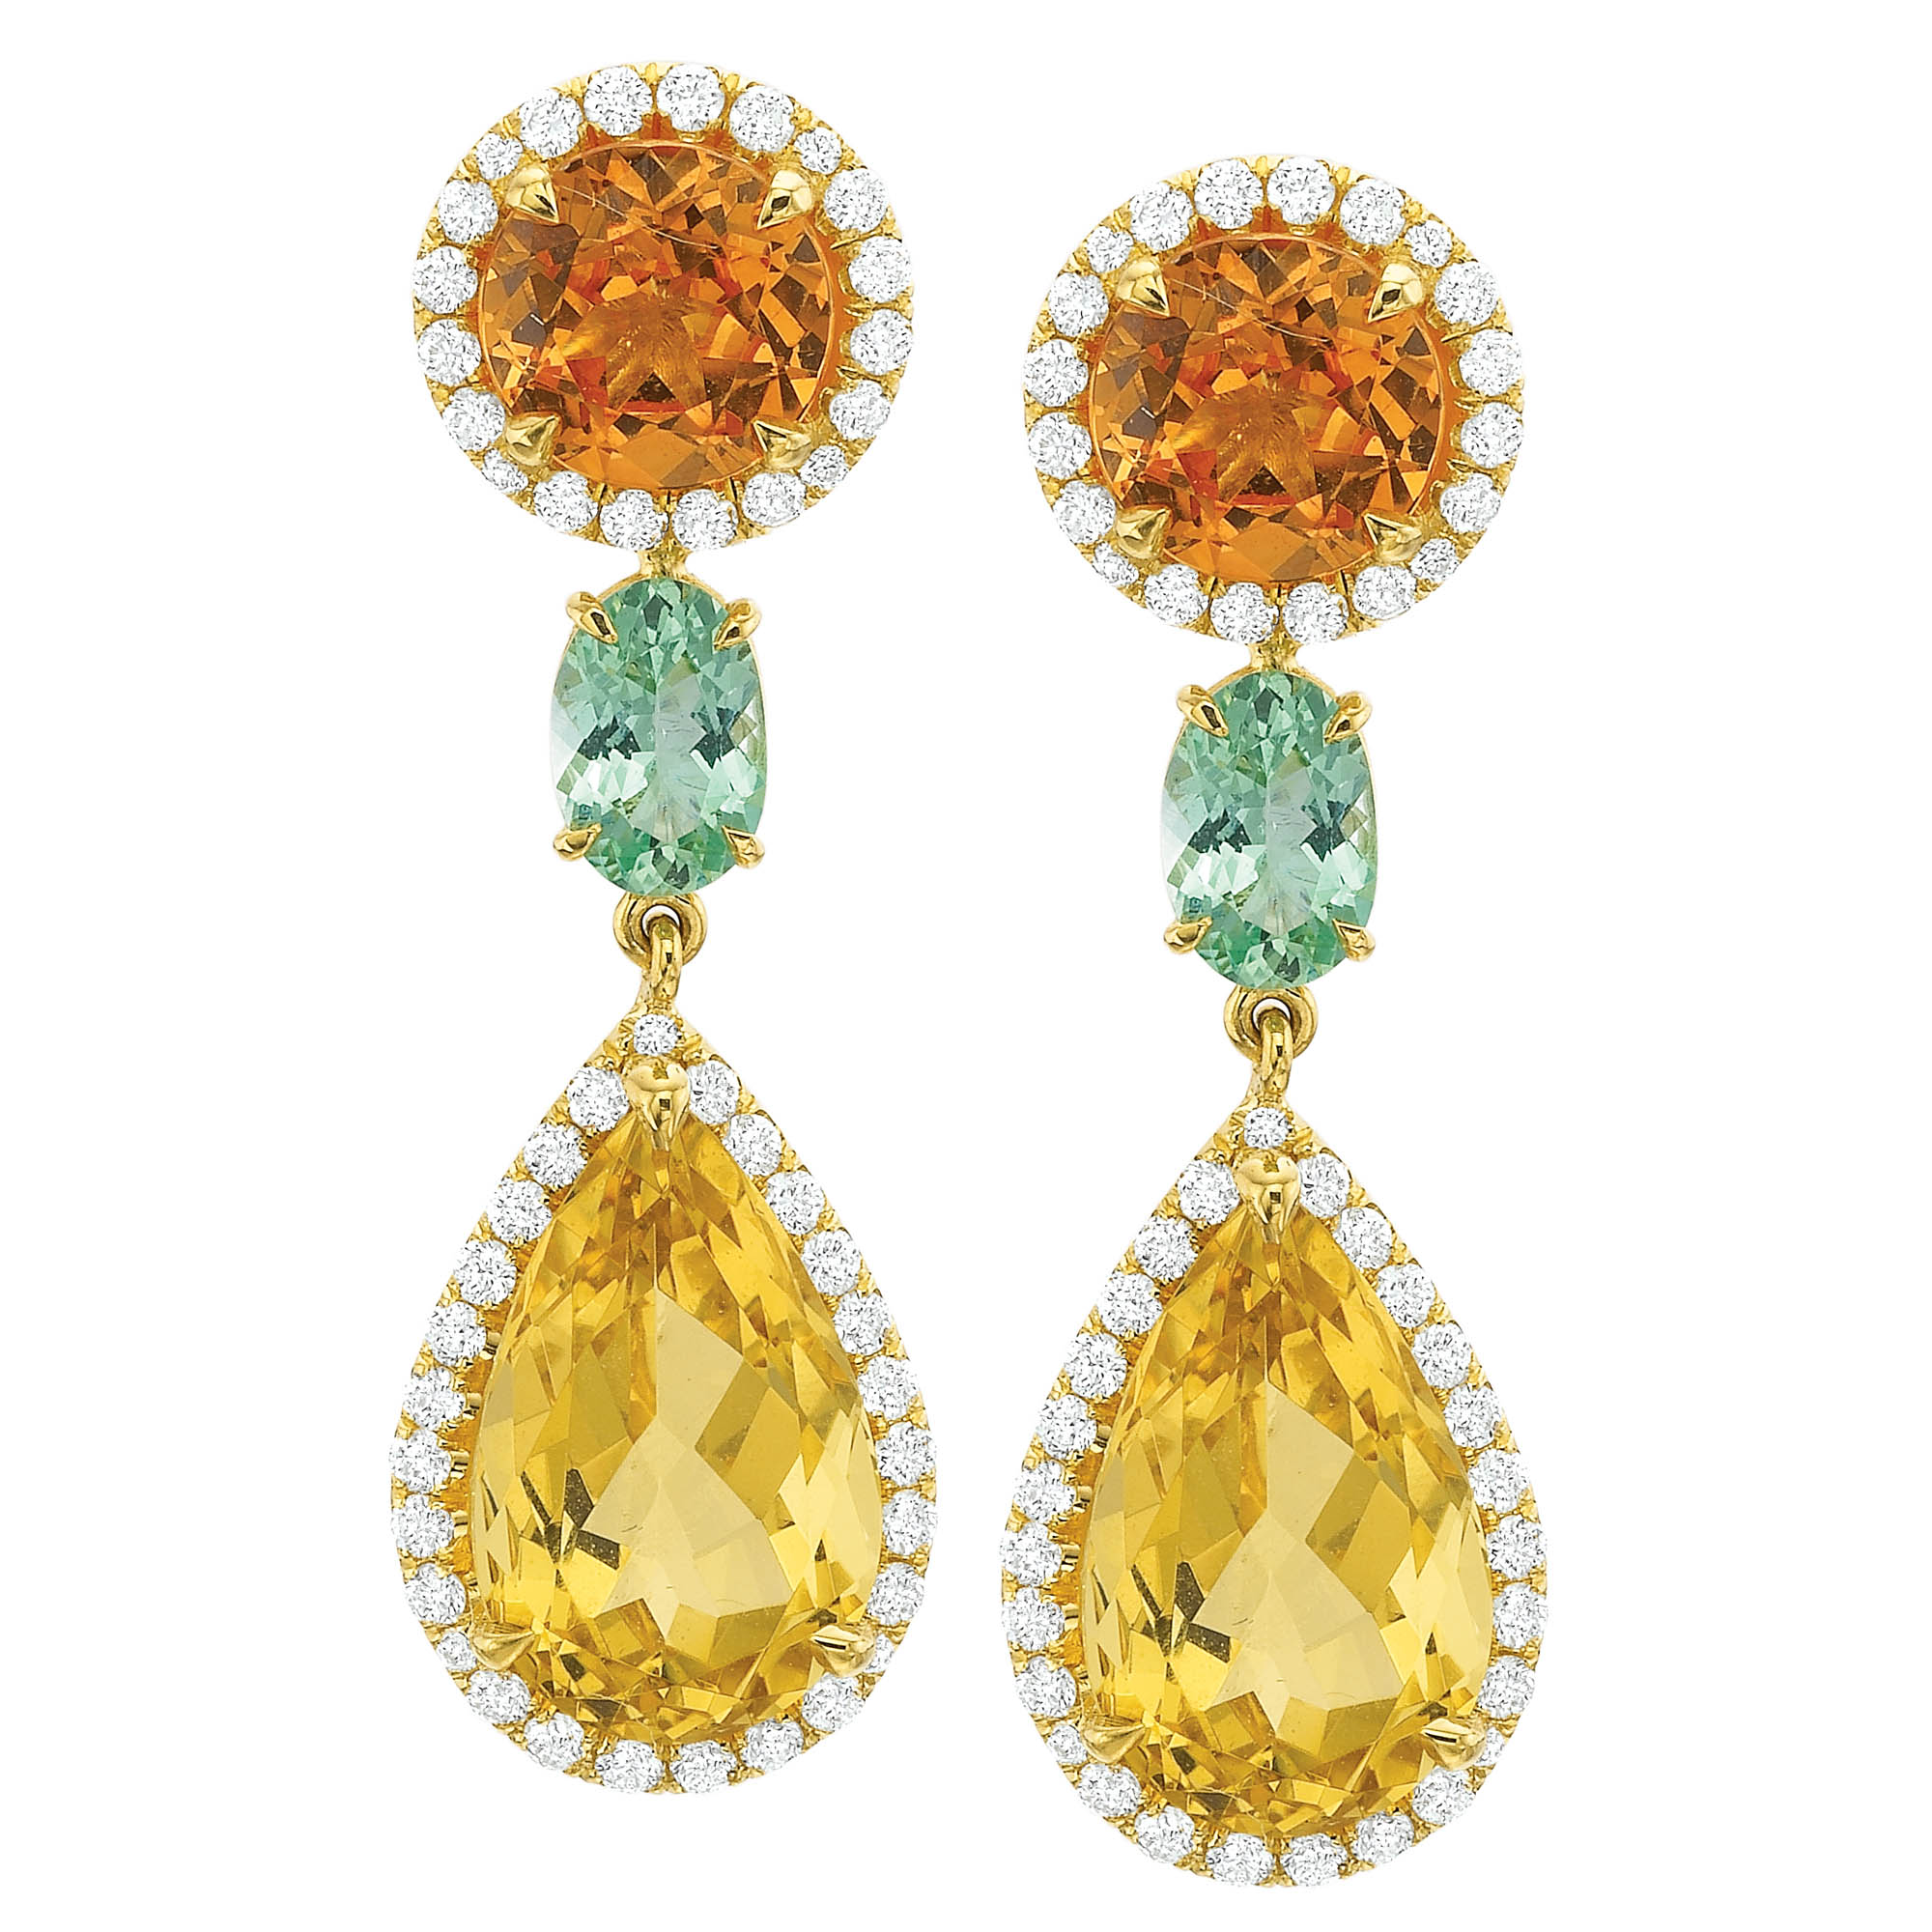 Mandarin Garnet Diamond Earrings with Yellow & Green Beryl | Andrew ...